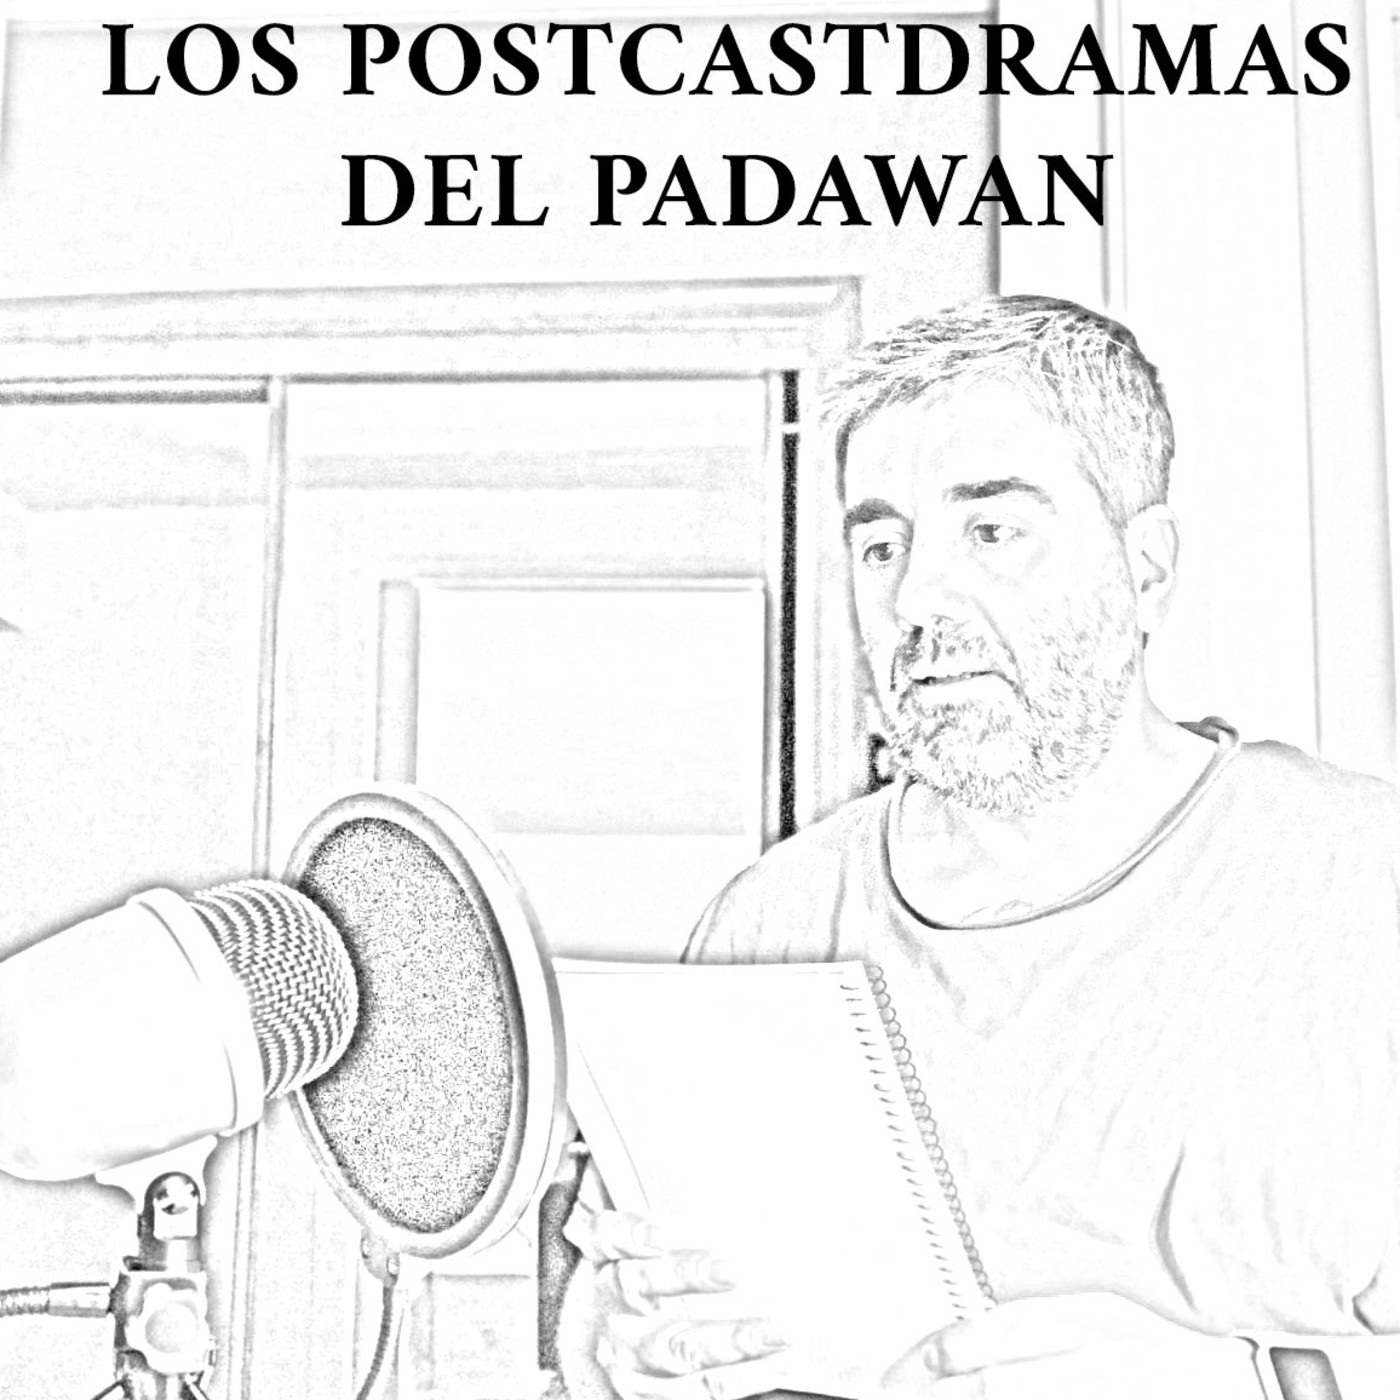 Los Podcastdramas del Padawan